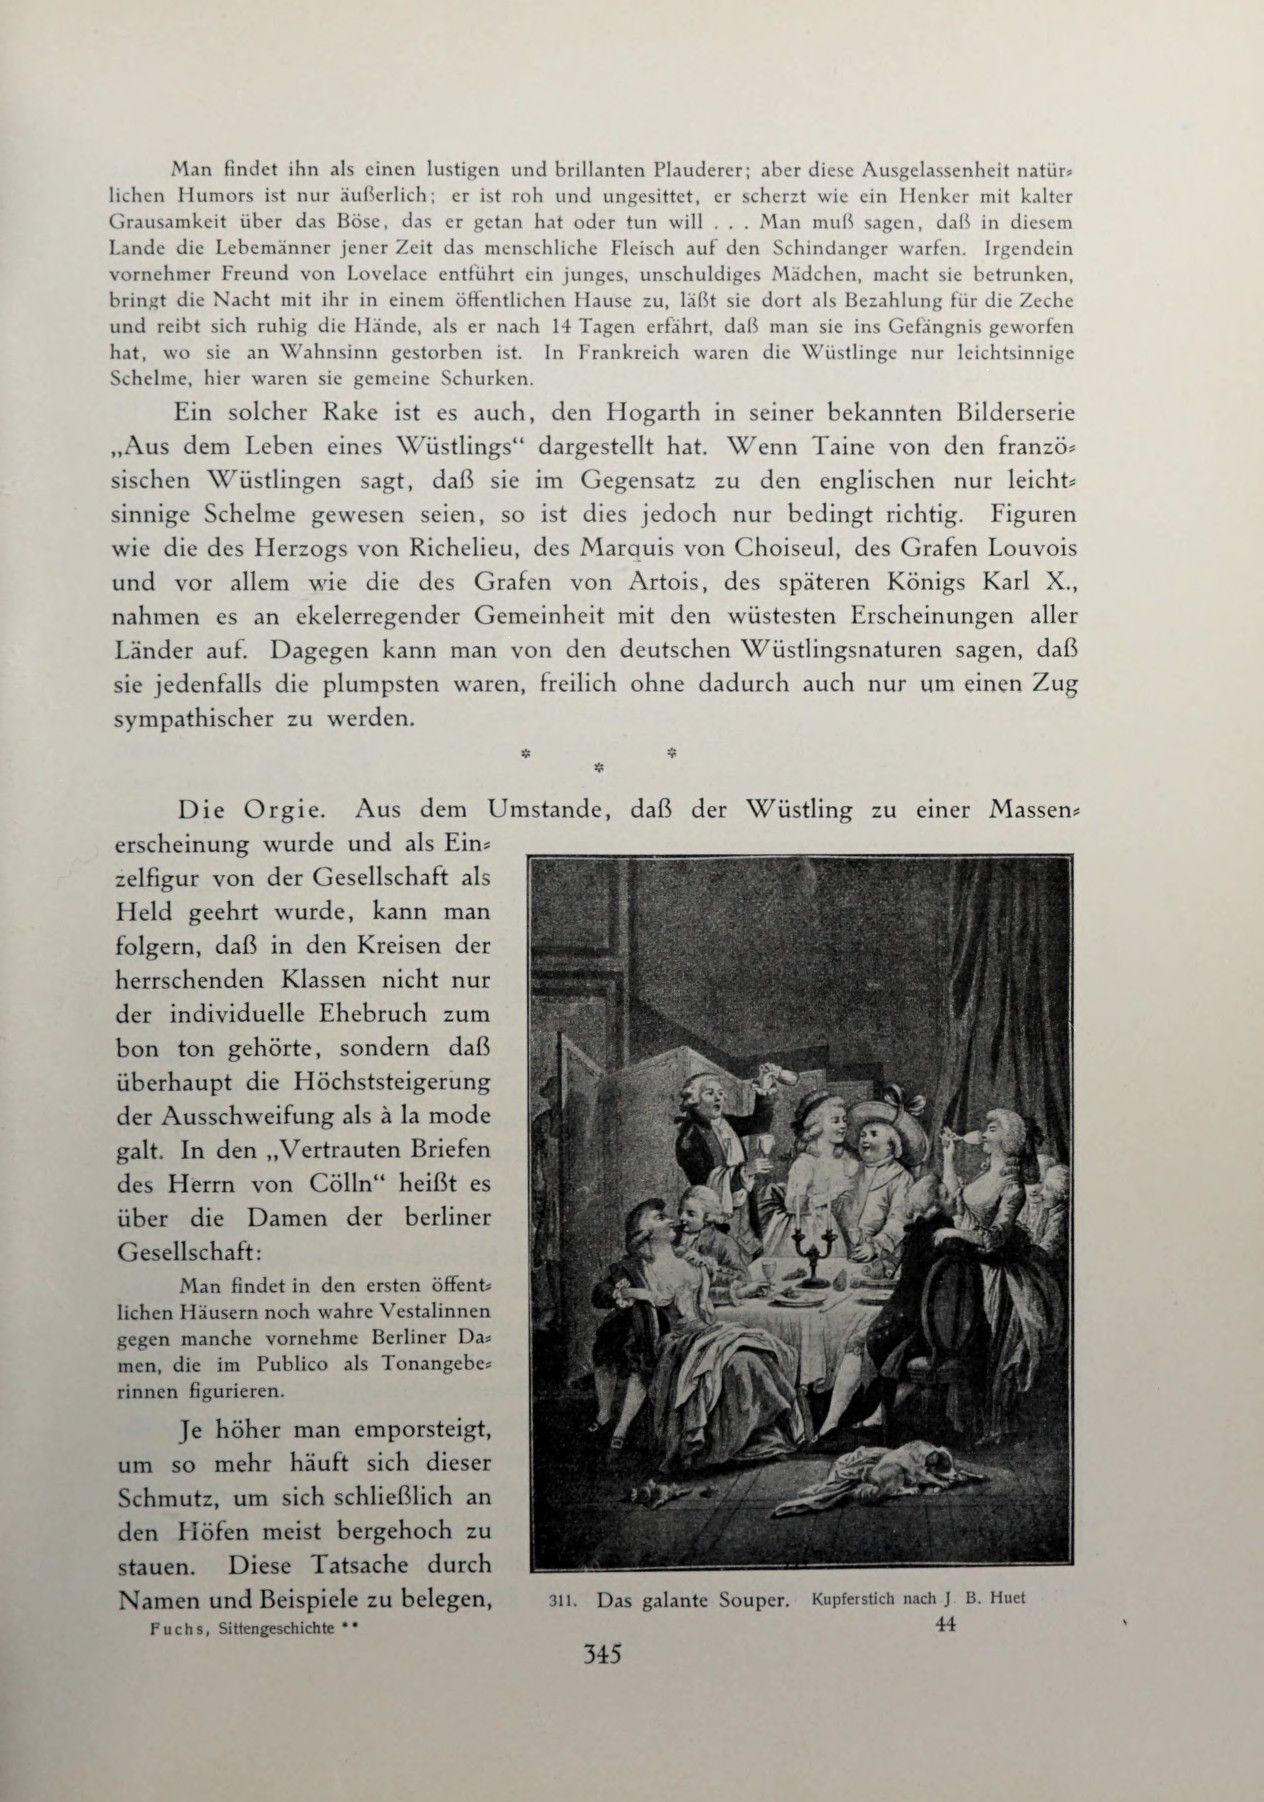 [Eduard Fuchs] Illustrierte Sittengeschichte vom Mittelalter bis zur Gegenwart: Bd. 2. and Ergänzungsband. Die galante Zeit [German] 502